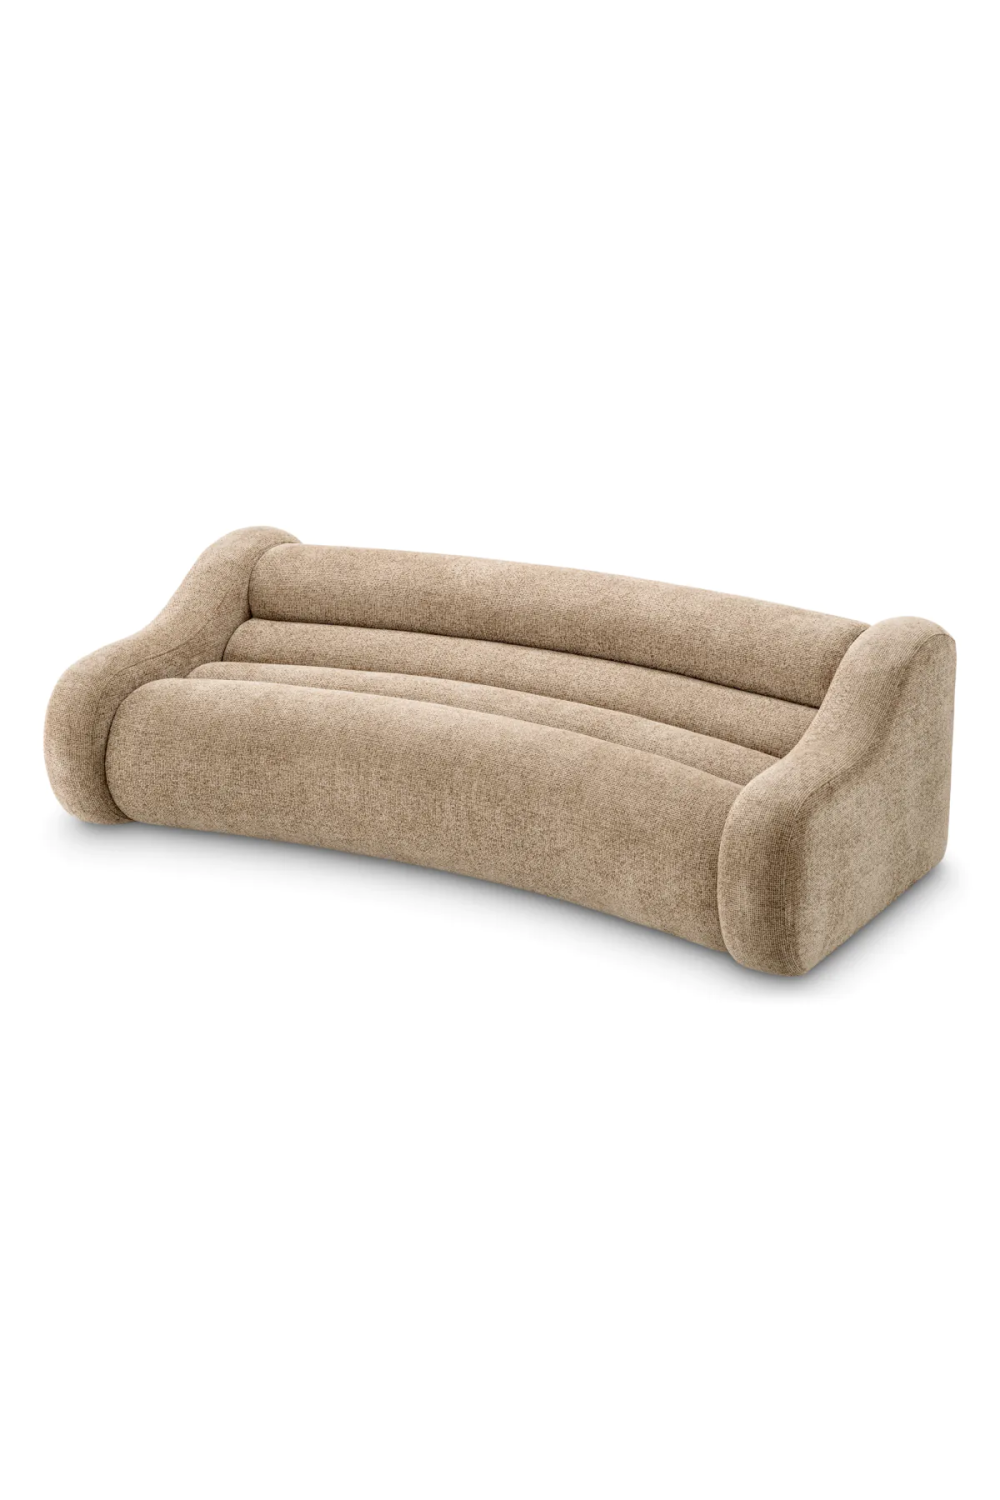 Beige Curved Sofa | Eichholtz Carbone | Oroa.com